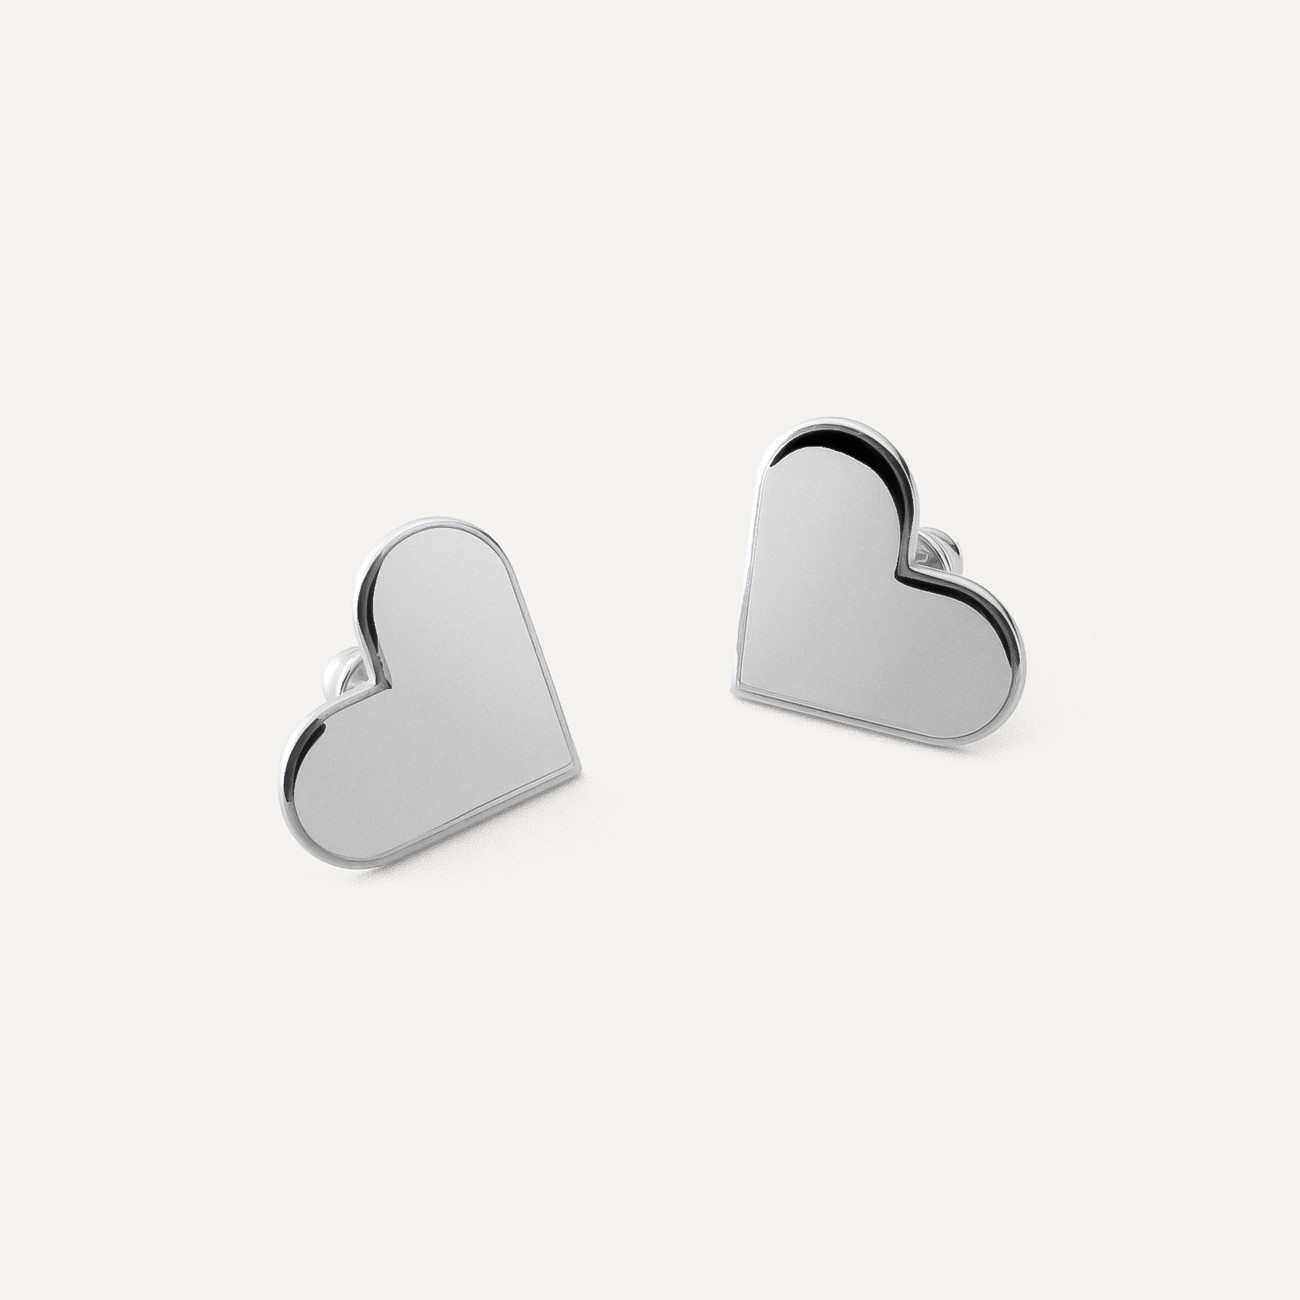 Small heart earrings, sterling silver 925